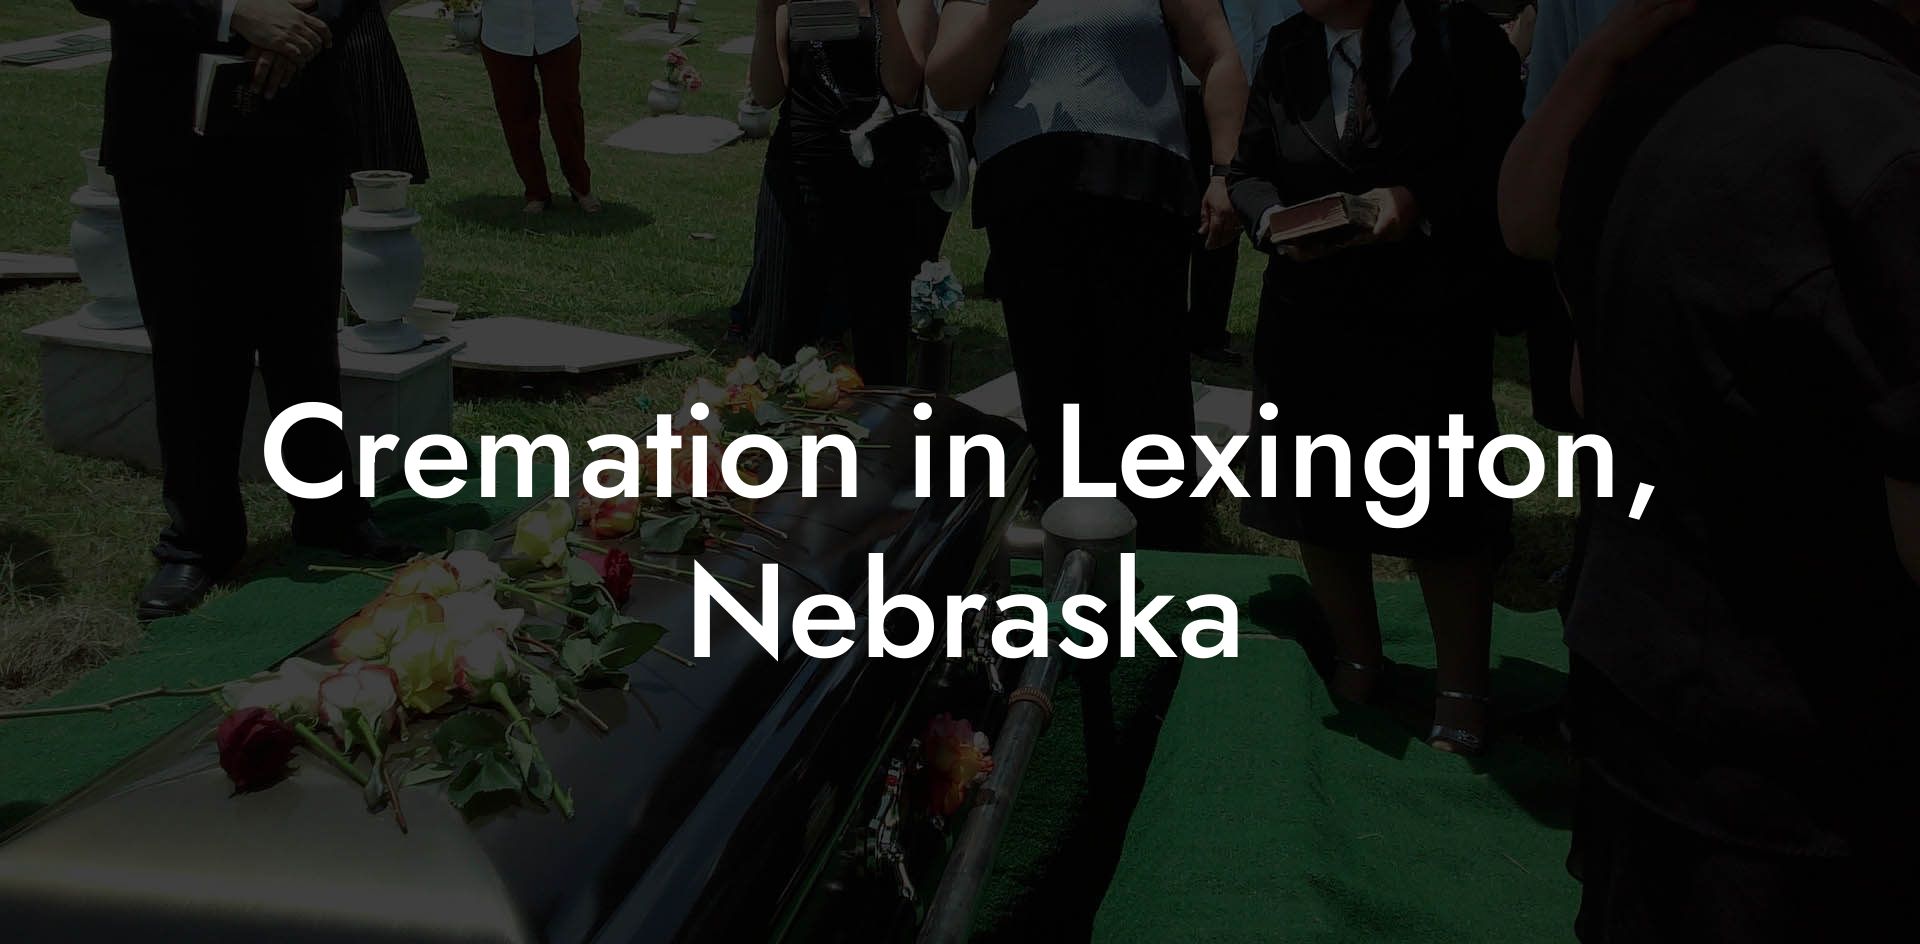 Cremation in Lexington, Nebraska